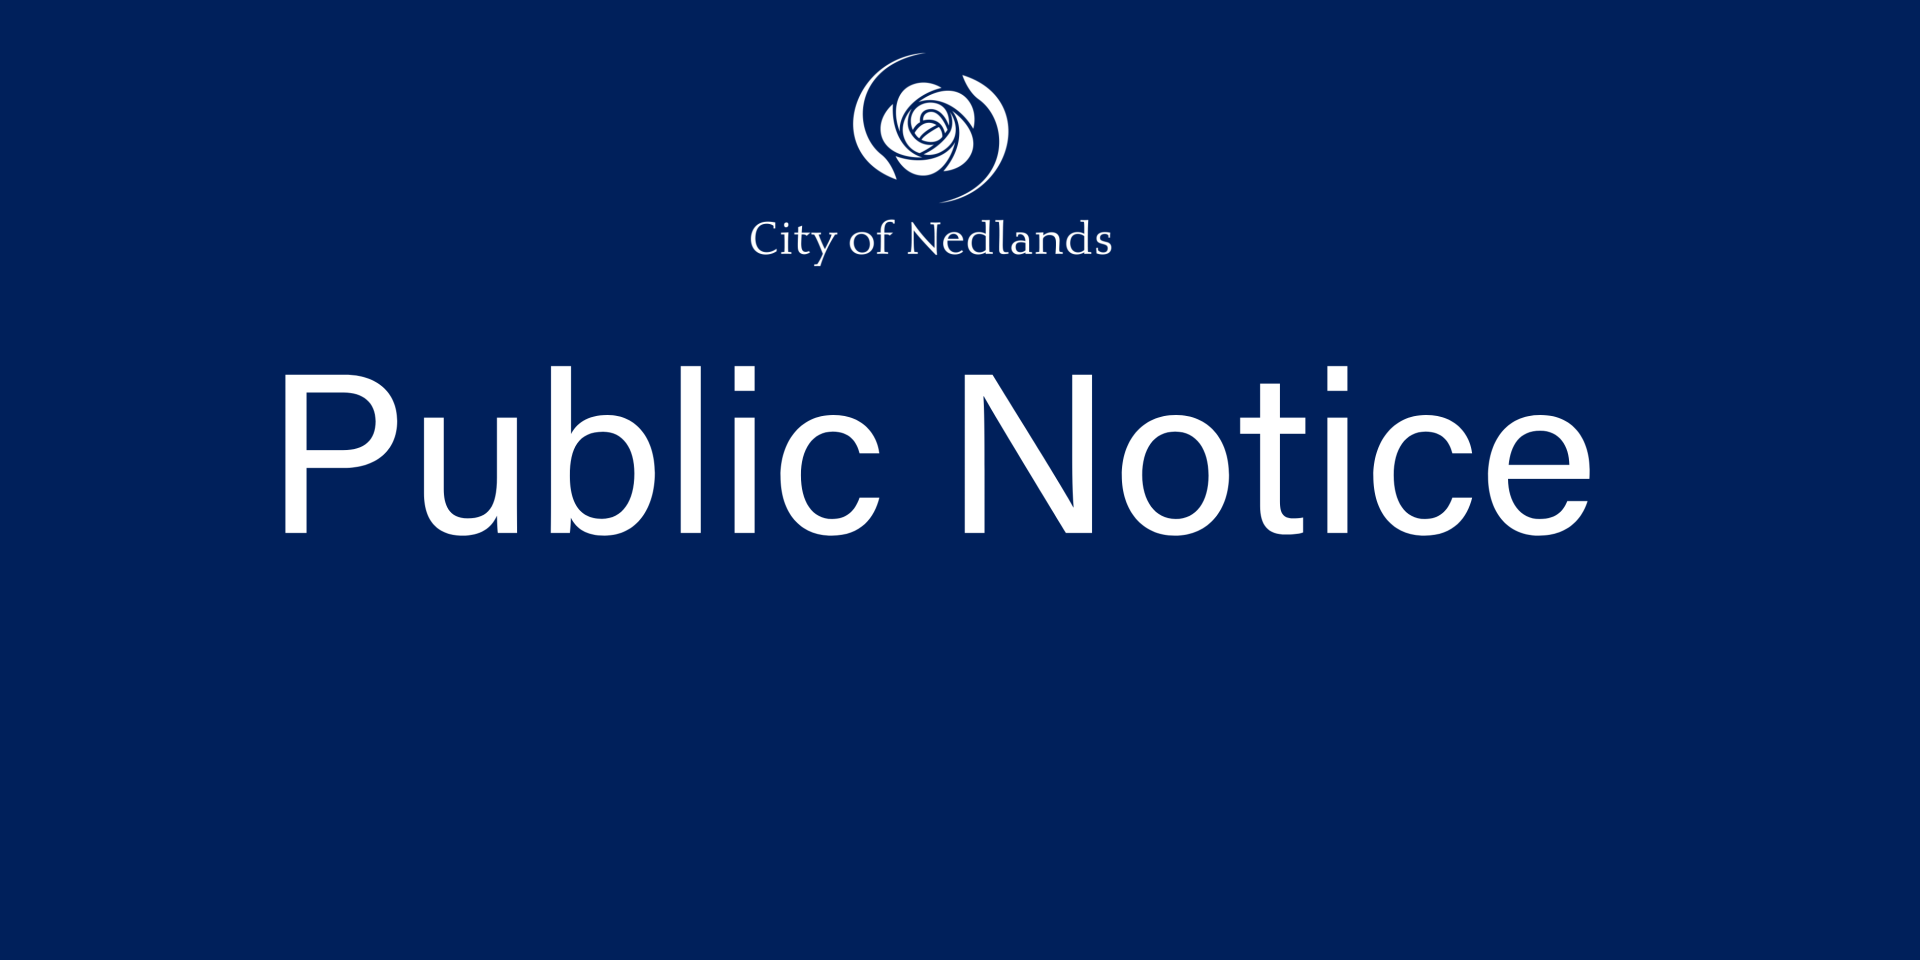 Closure notice: Thursday 26 January 2022